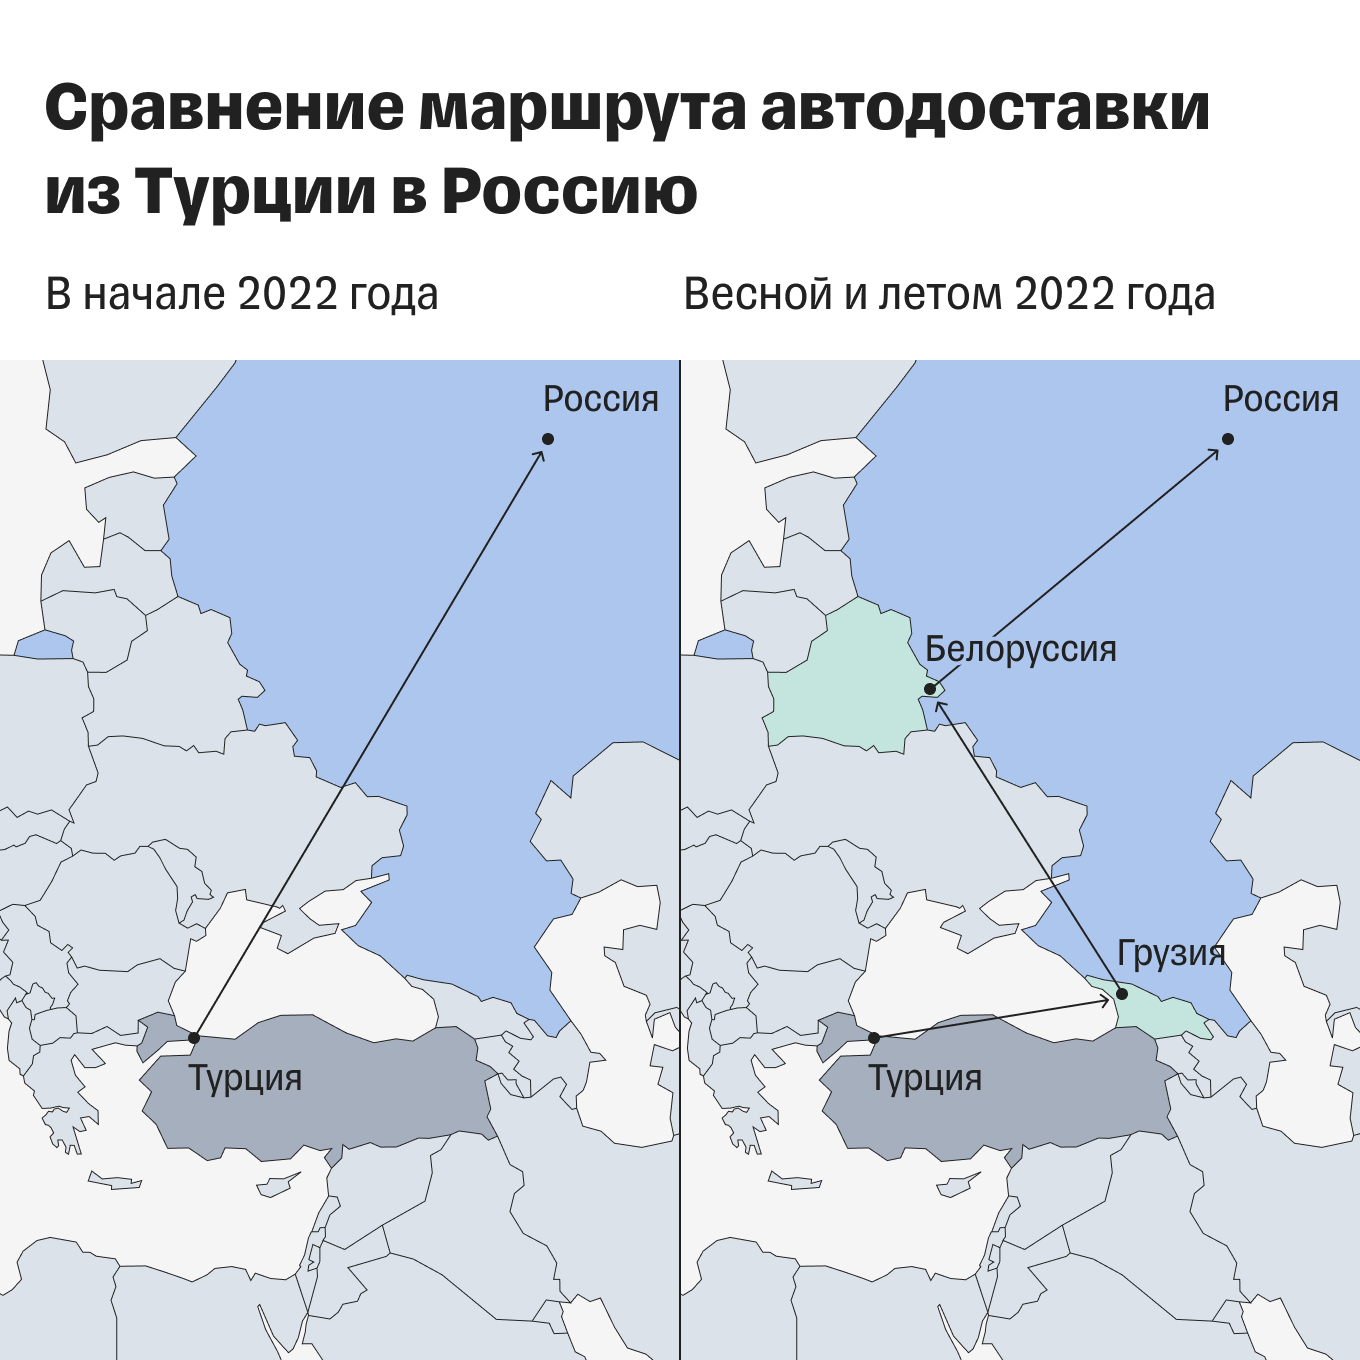 Доставка товара из Турции в Россию по сухопутной границе